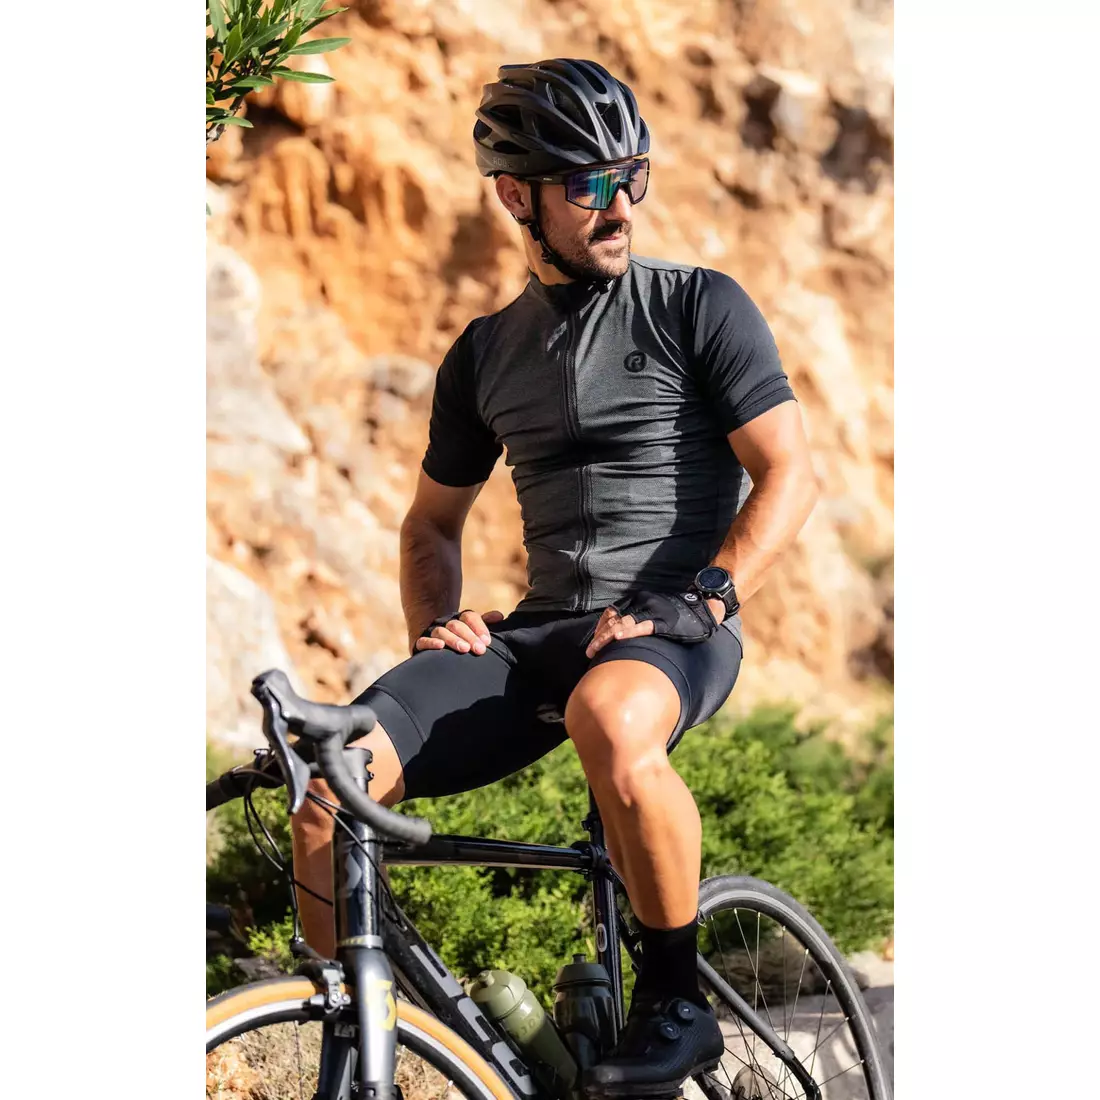 Rogelli MELANGE pánský cyklistický dres, khaki